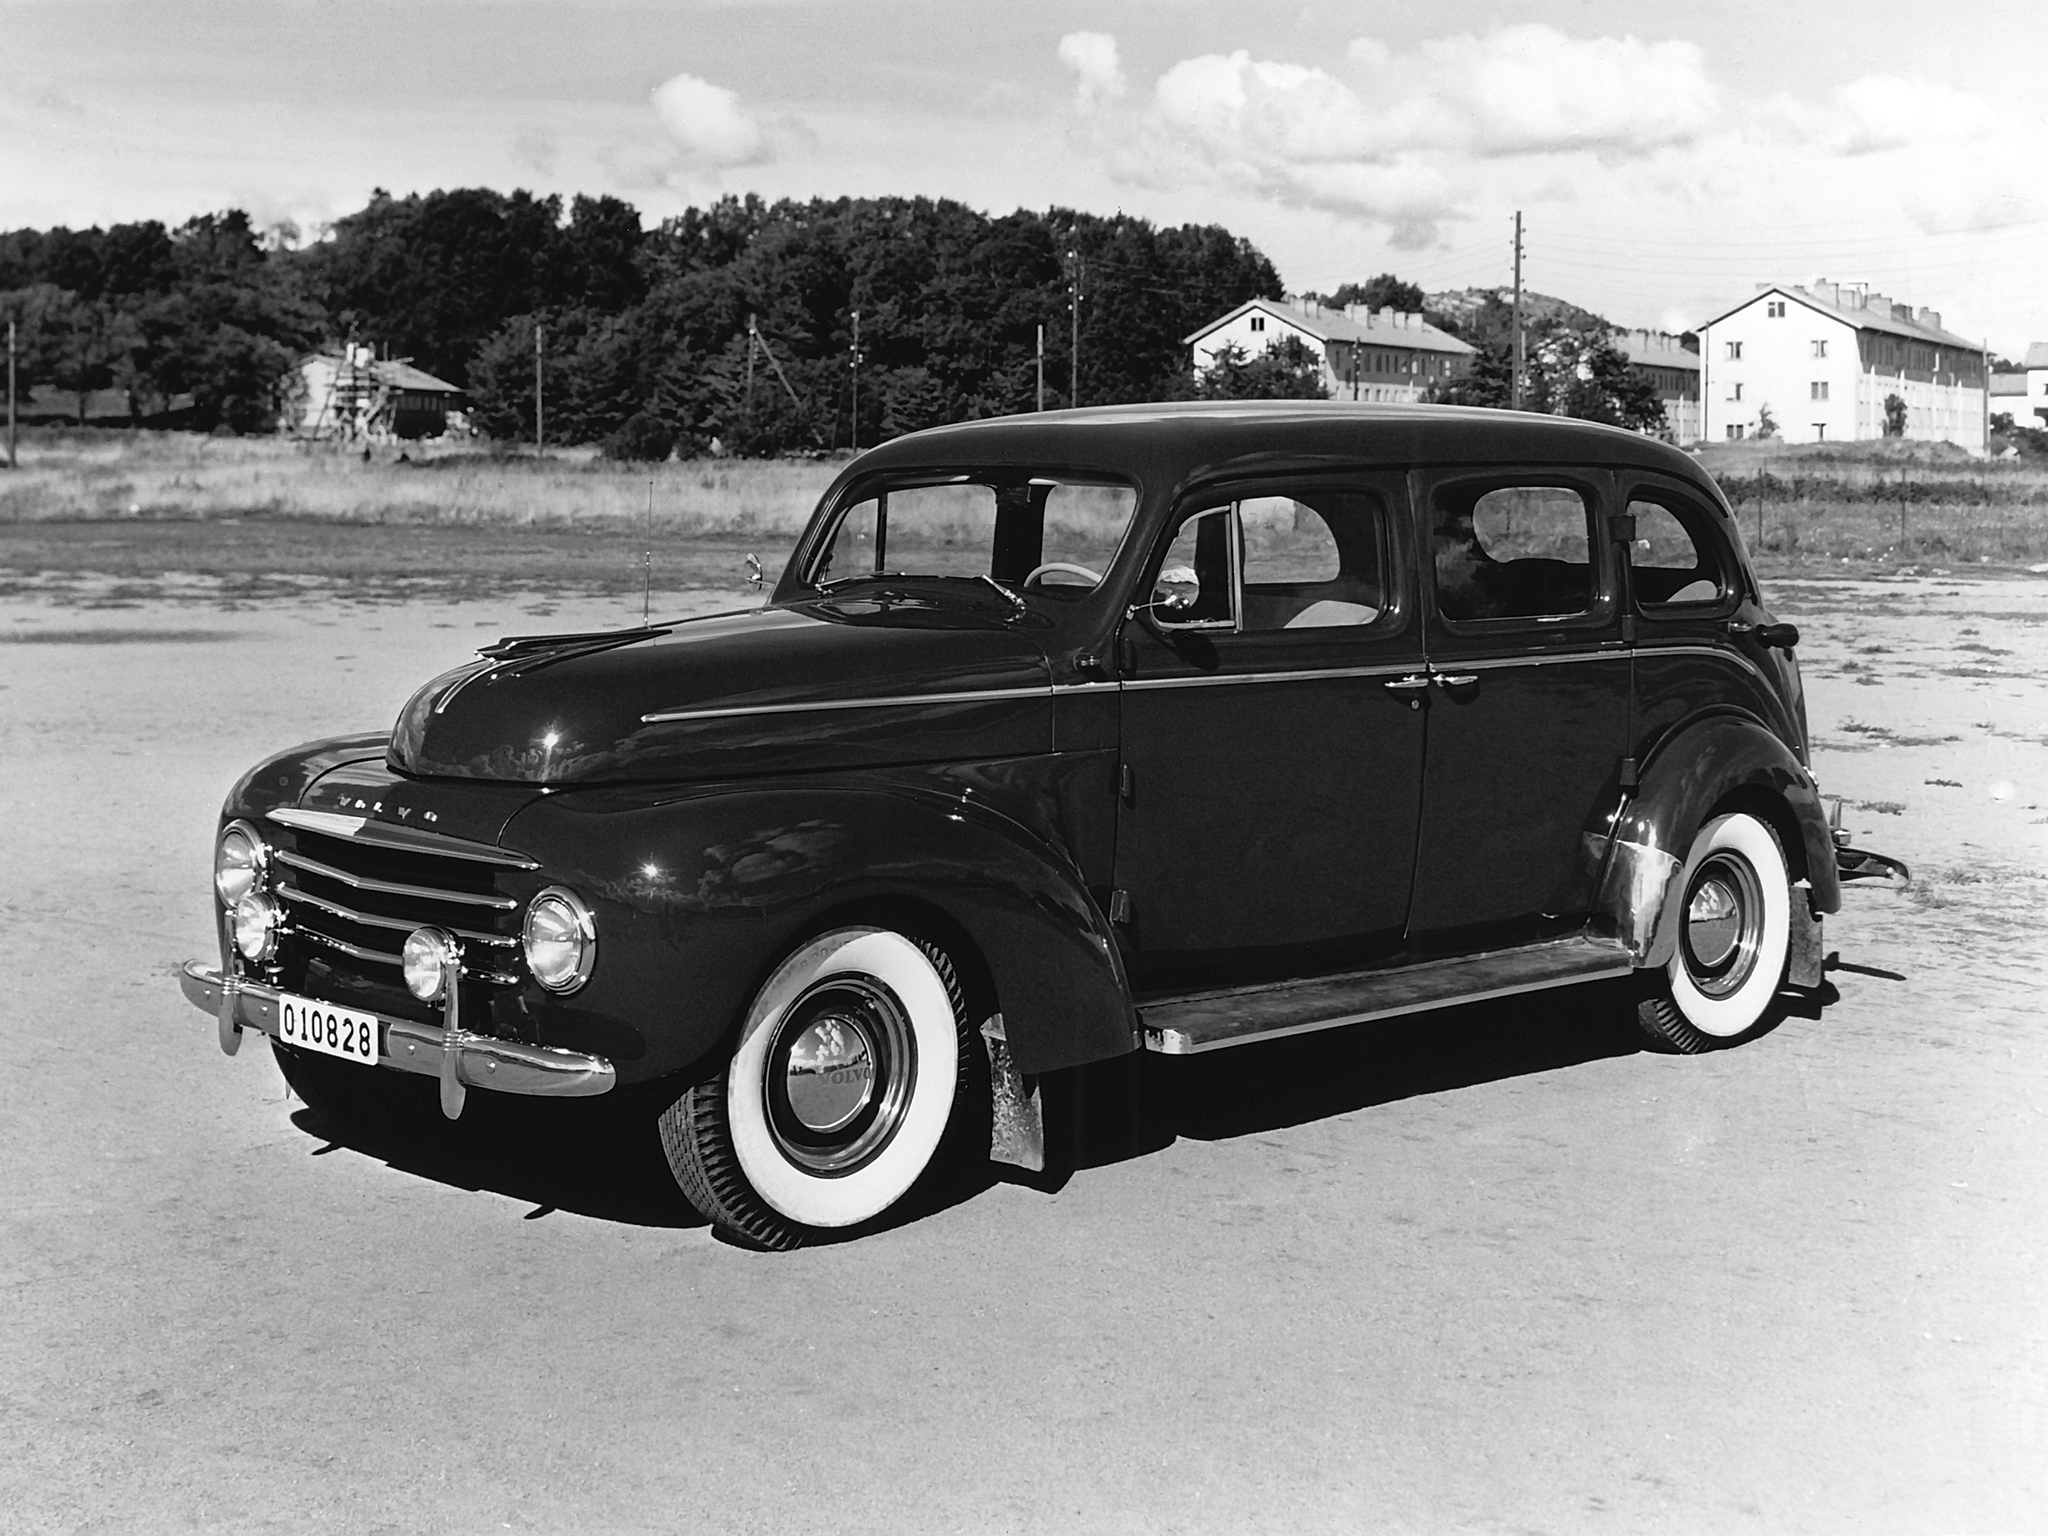 1950, Volvo, Pv831, Taxi, Retro Wallpaper